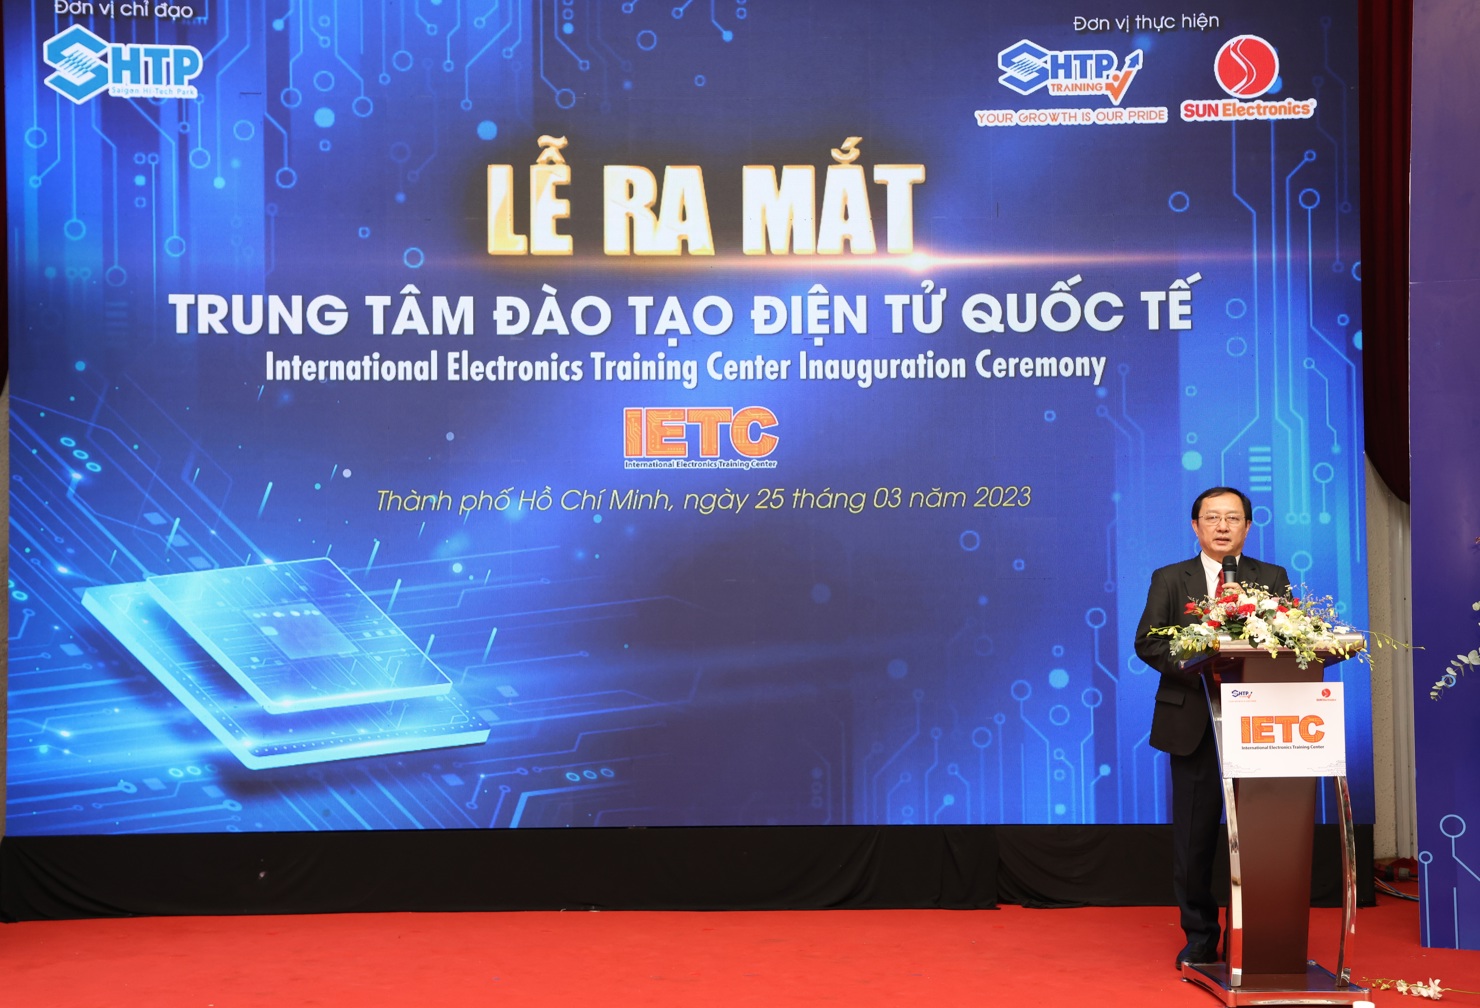 Bộ trưởng Khoa học và Công nghệ Huỳnh Thành Đạt phát biểu tại Lễ ra mắt. Ảnh: Thành uỷ TP. Hồ Chí Minh.